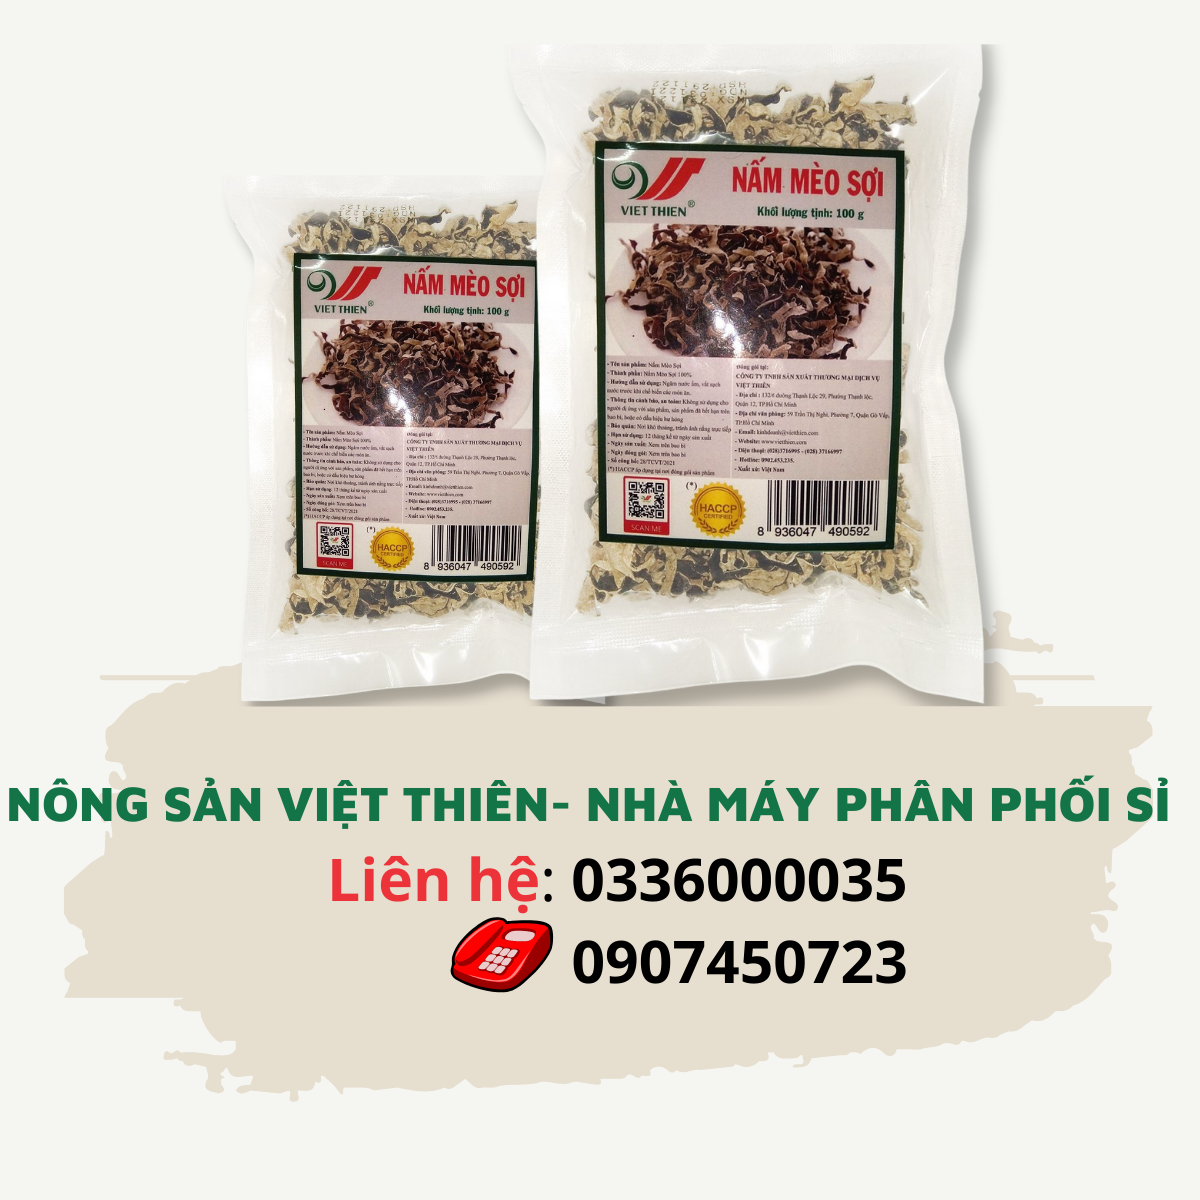 Nấm mèo sợi Việt Thiên, nhà máy sản xuất và phân phối nông sản Việt Thiên, giá rẻ